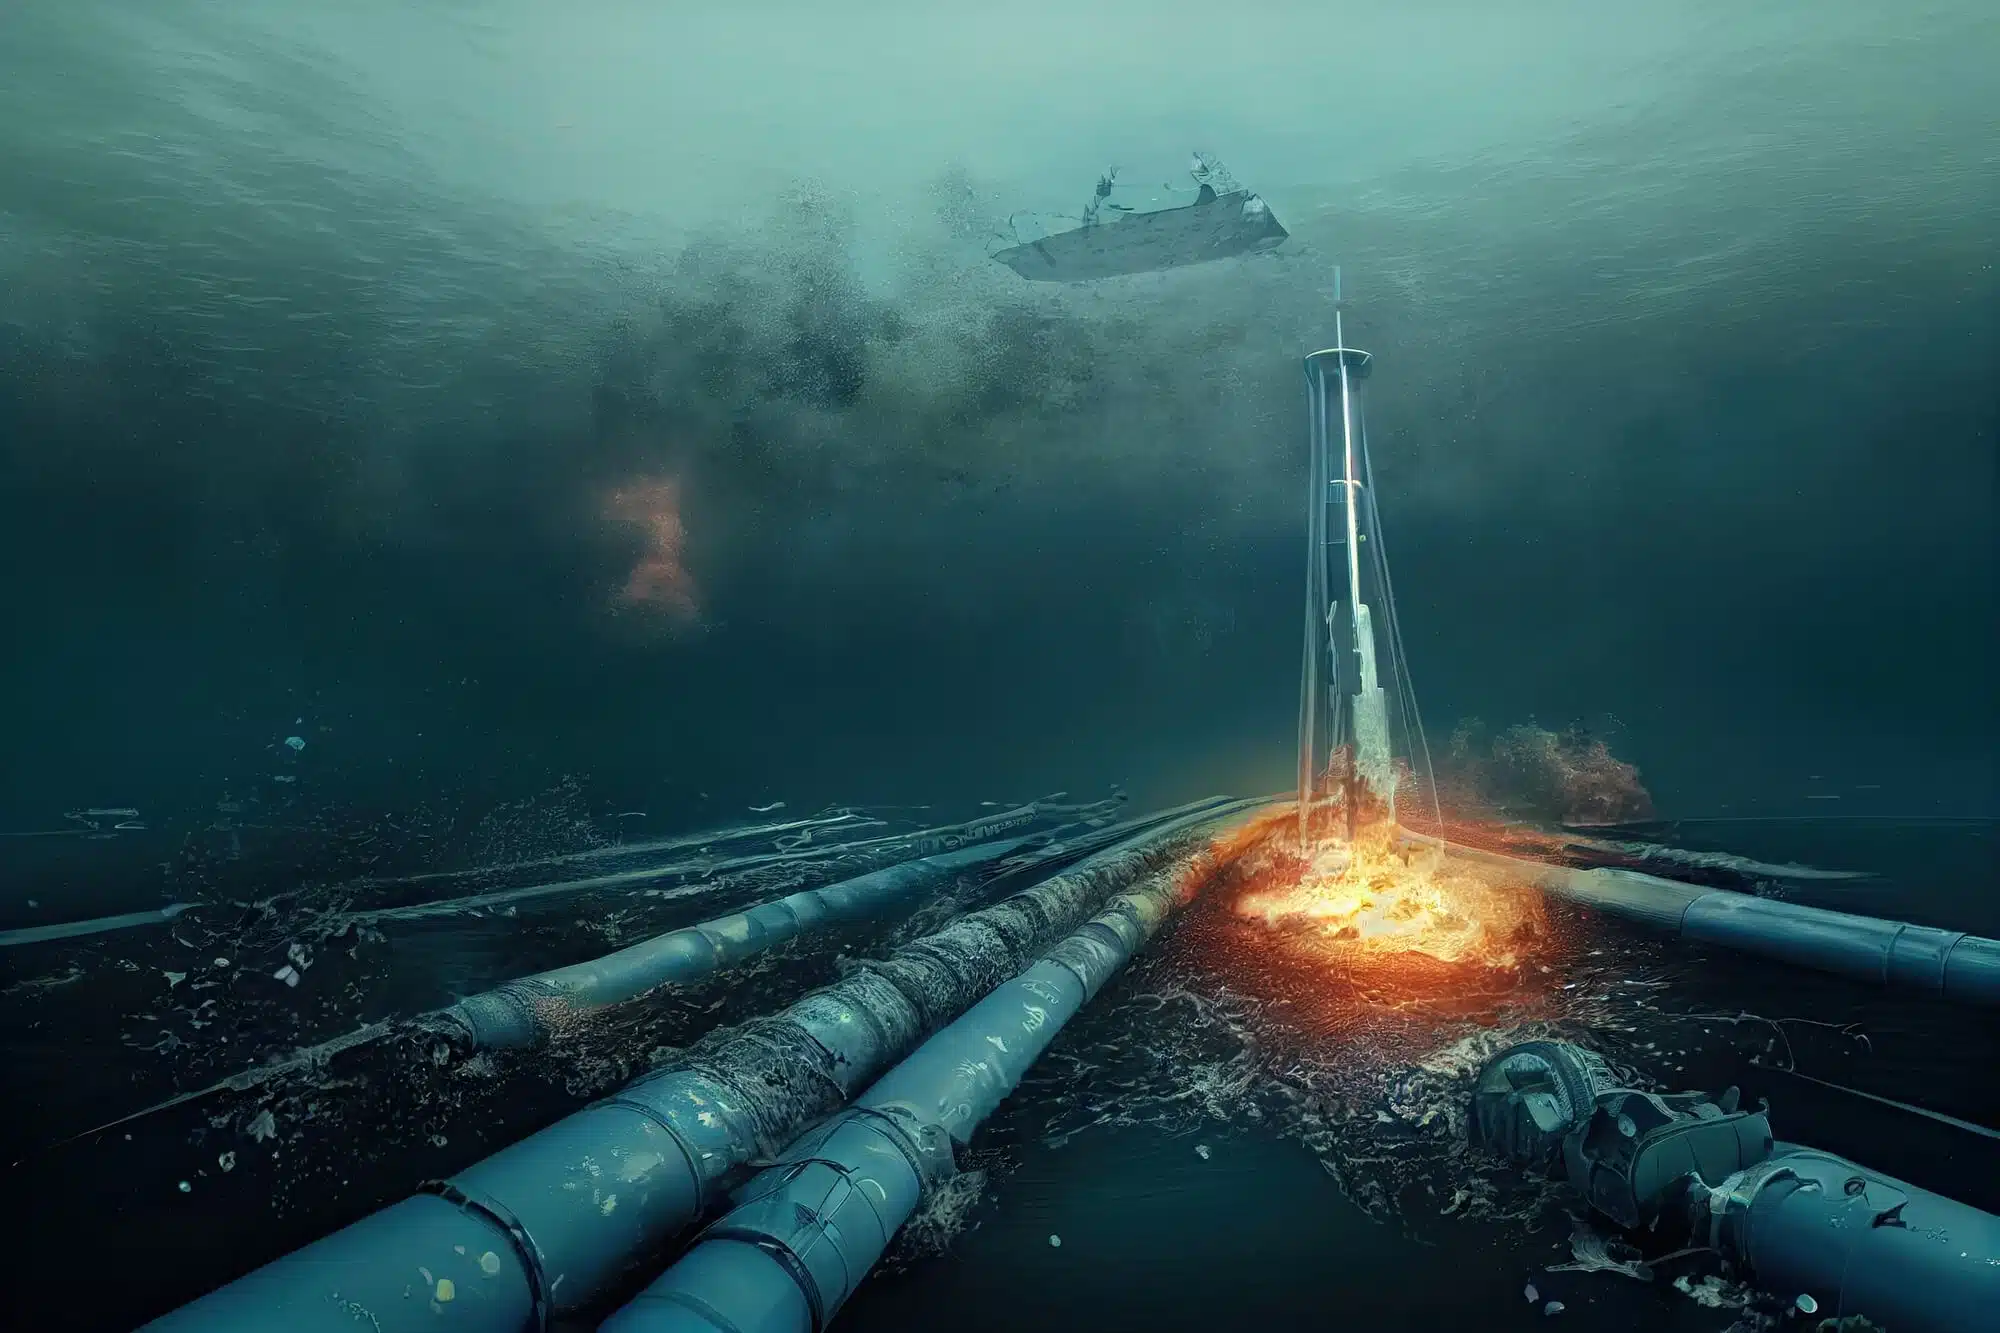 הדמיה של פיצוץ צינור גז תת מימי בדומה לצינור הגז הרוסי שפוצץ על ידי הרוסים כדי למנוע גז מאירופה בעת הפלישה שלה לאוקראינה. <a href="https://depositphotos.com. ">המחשה: depositphotos.com</a>